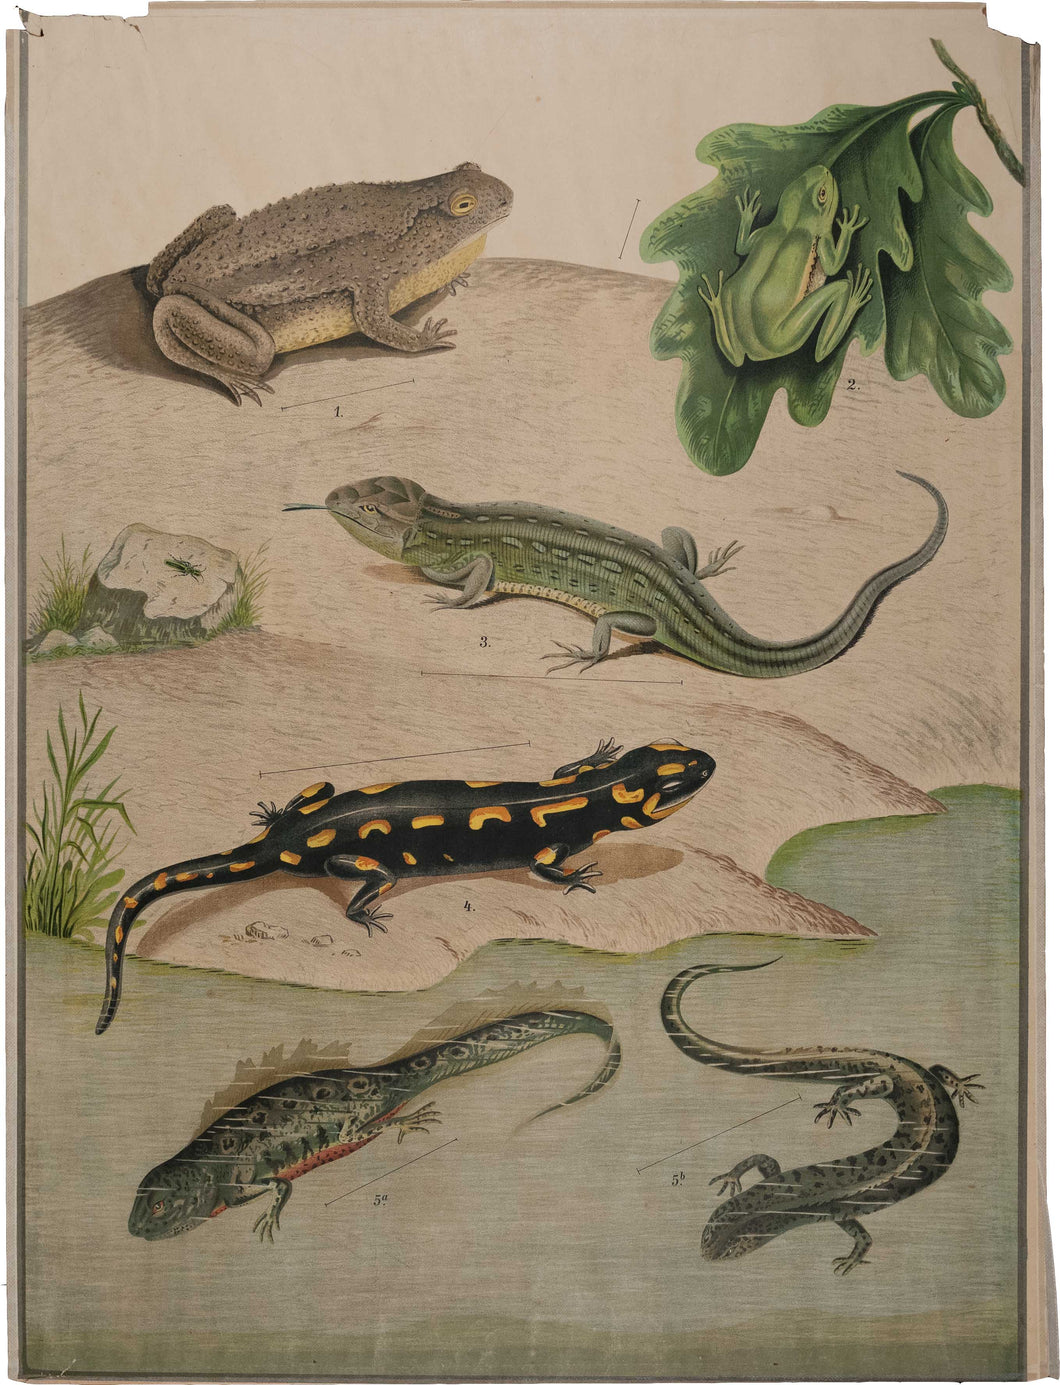 Amphibien